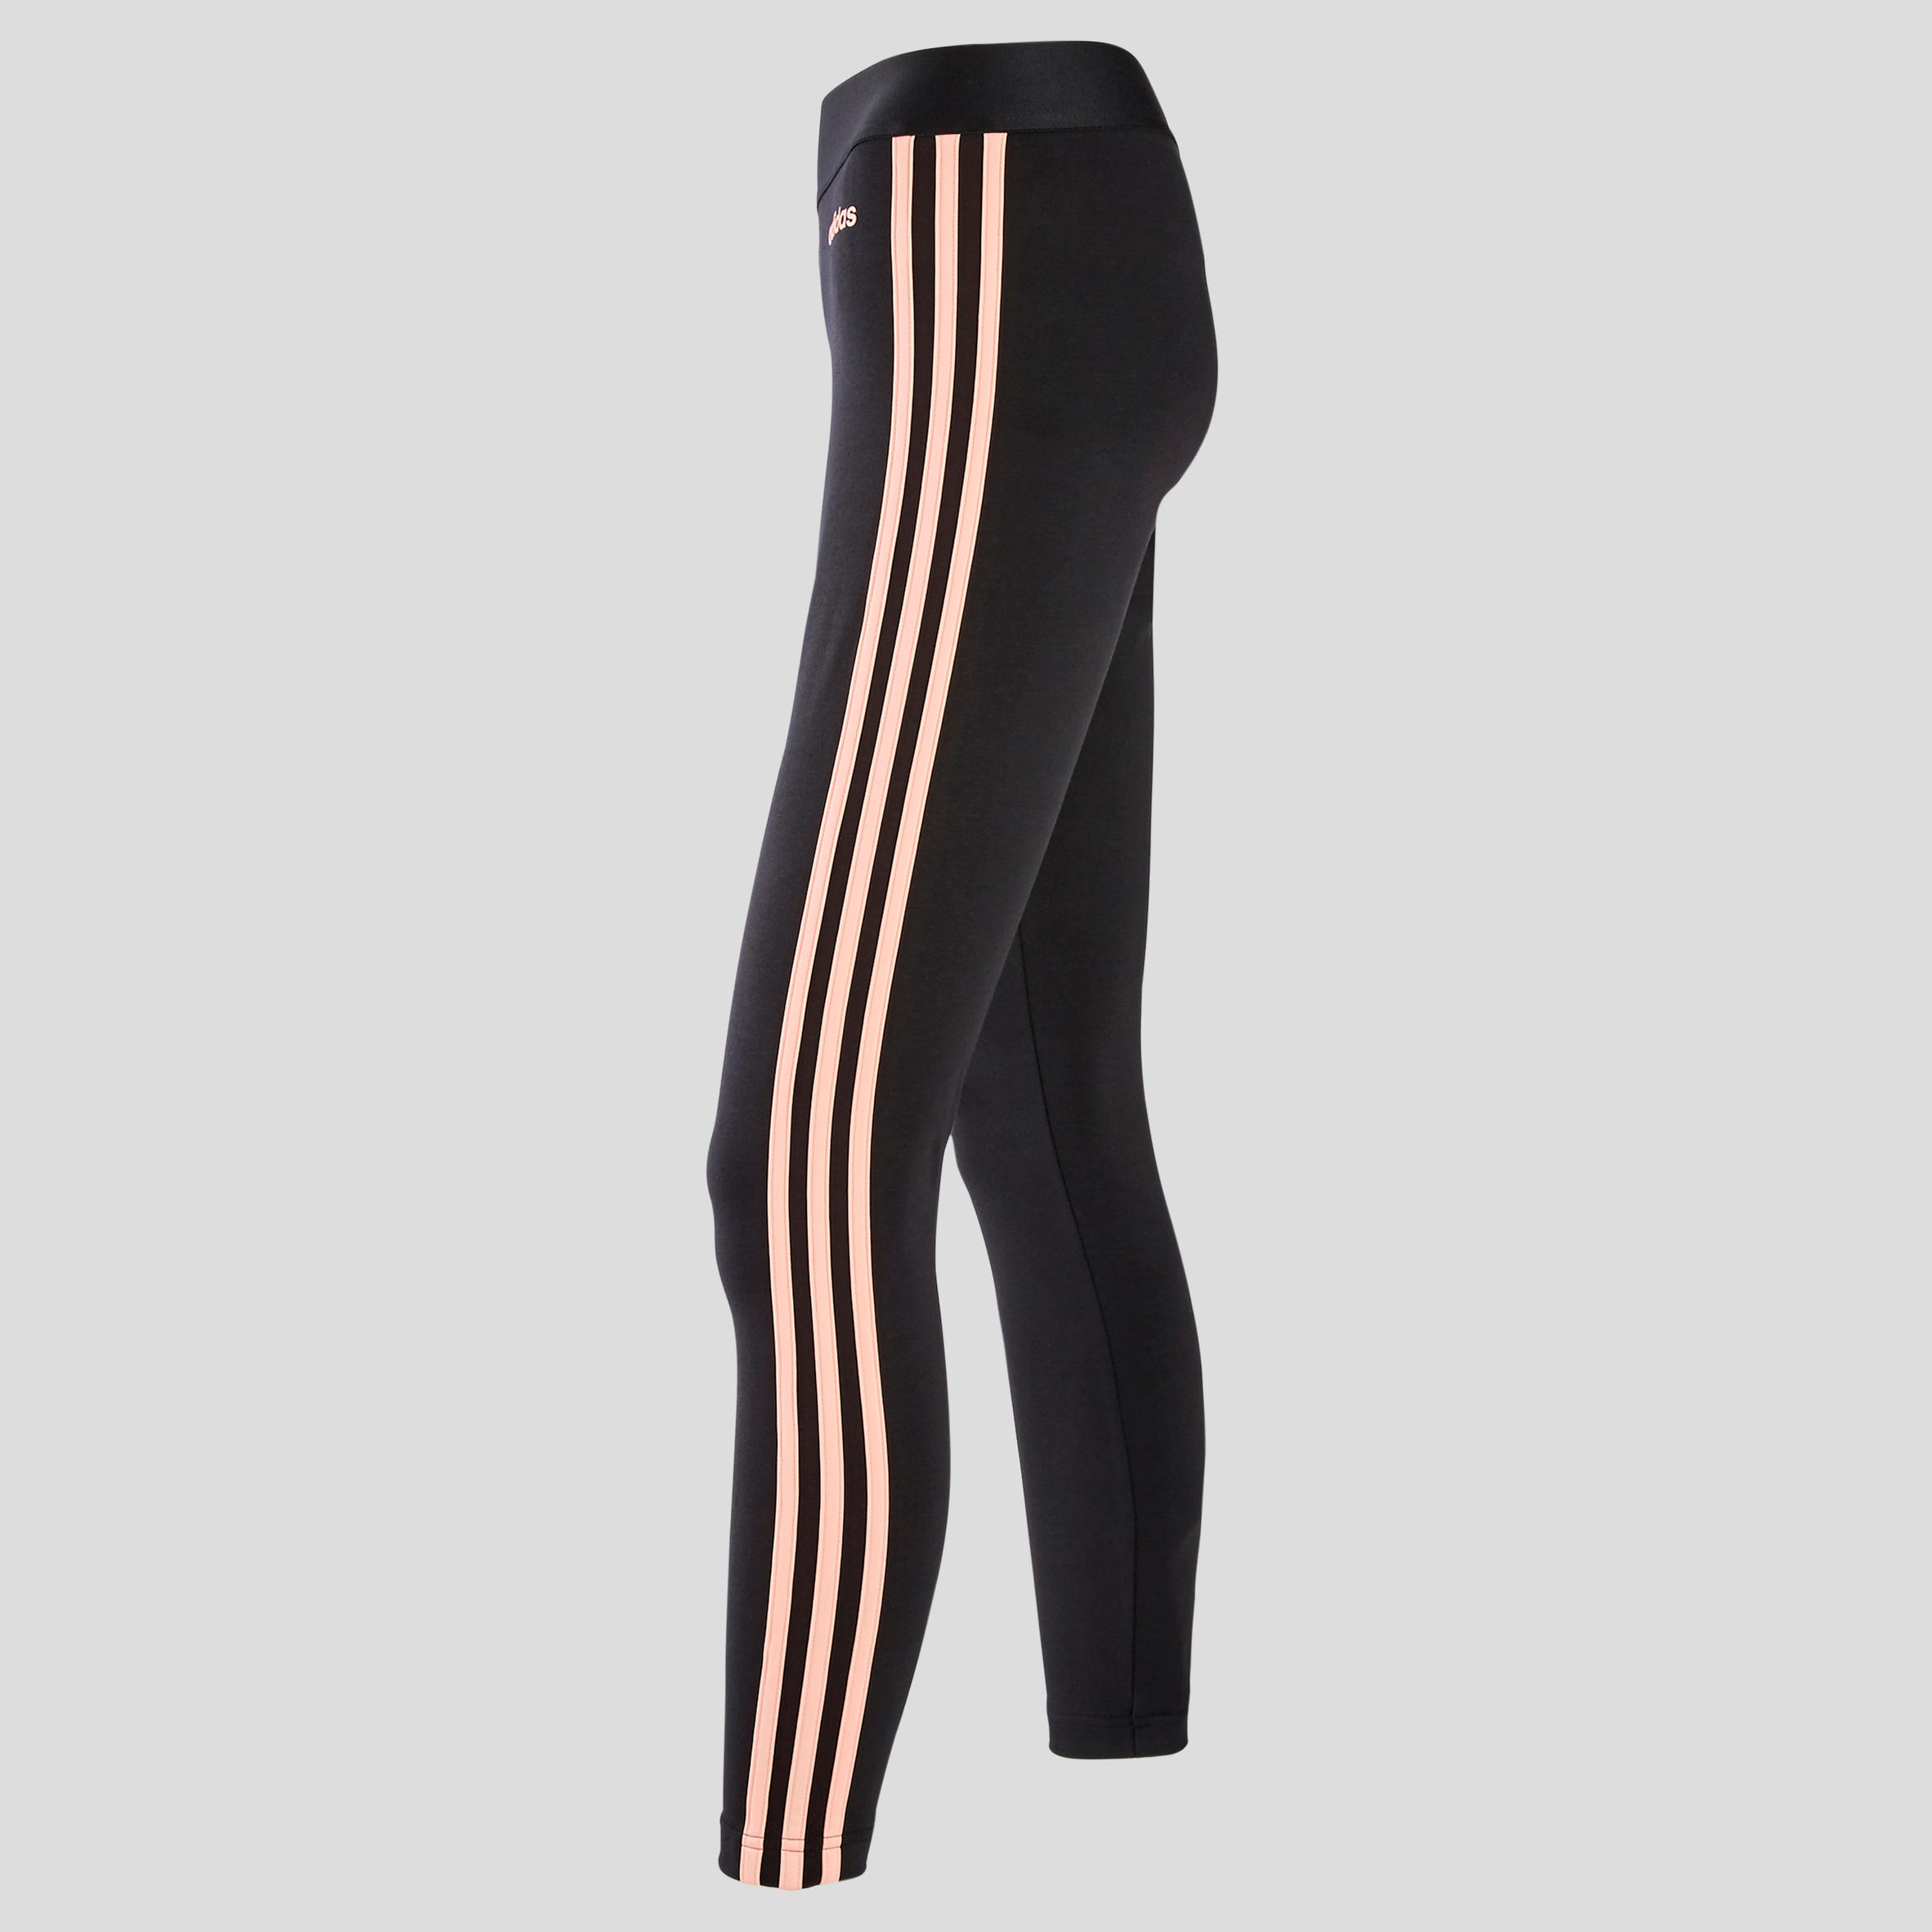 adidas pink 3 stripe leggings